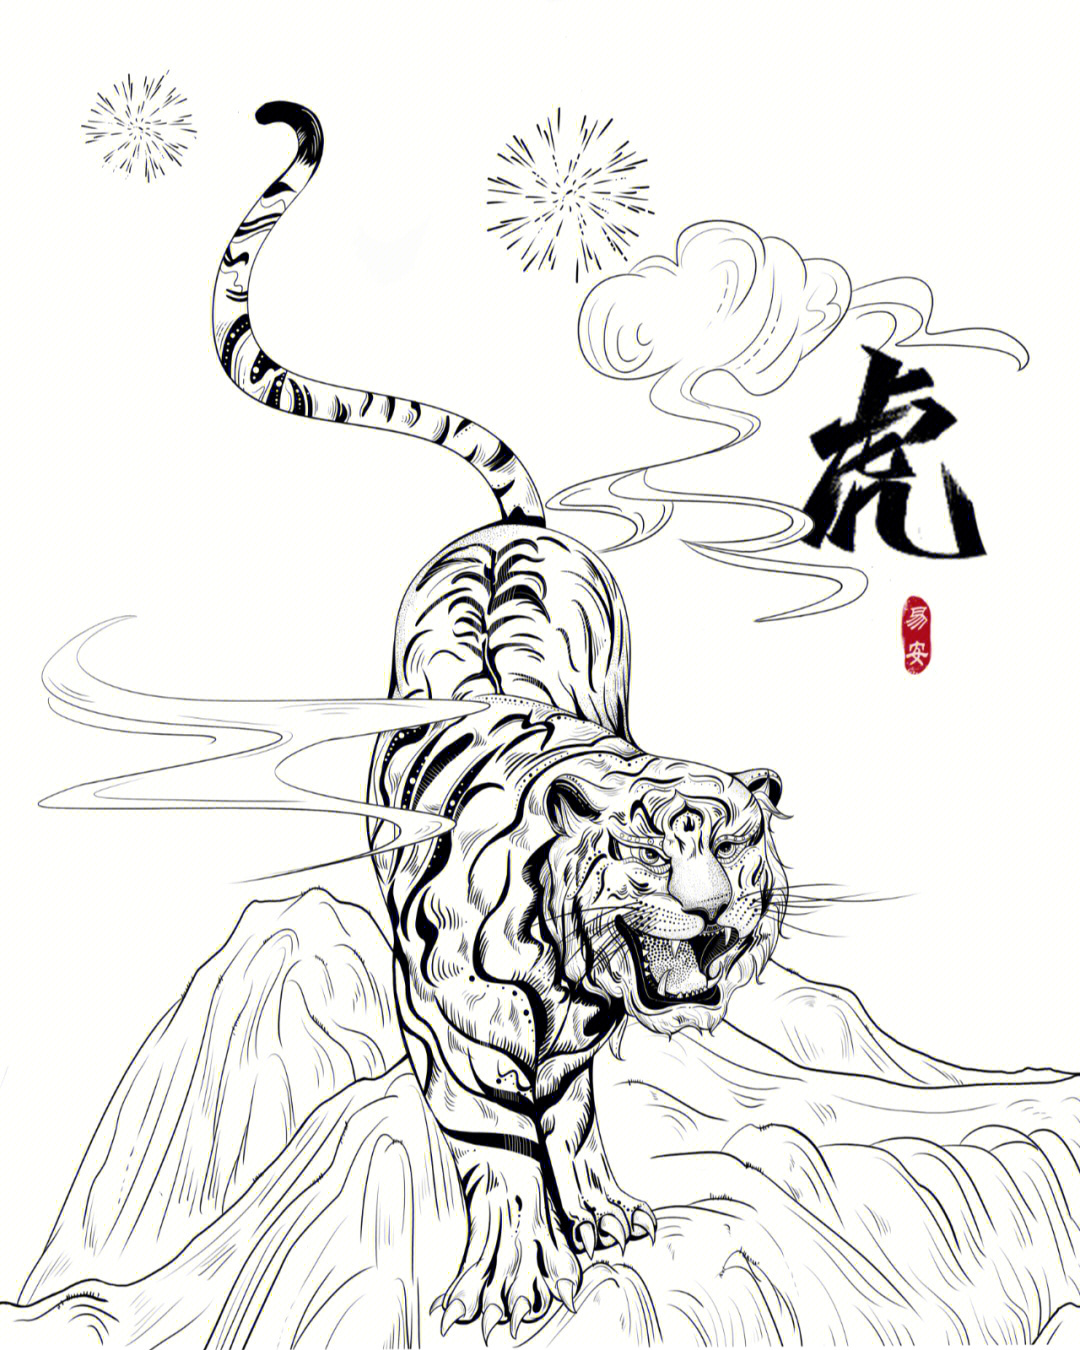 虎年的老虎画法图片